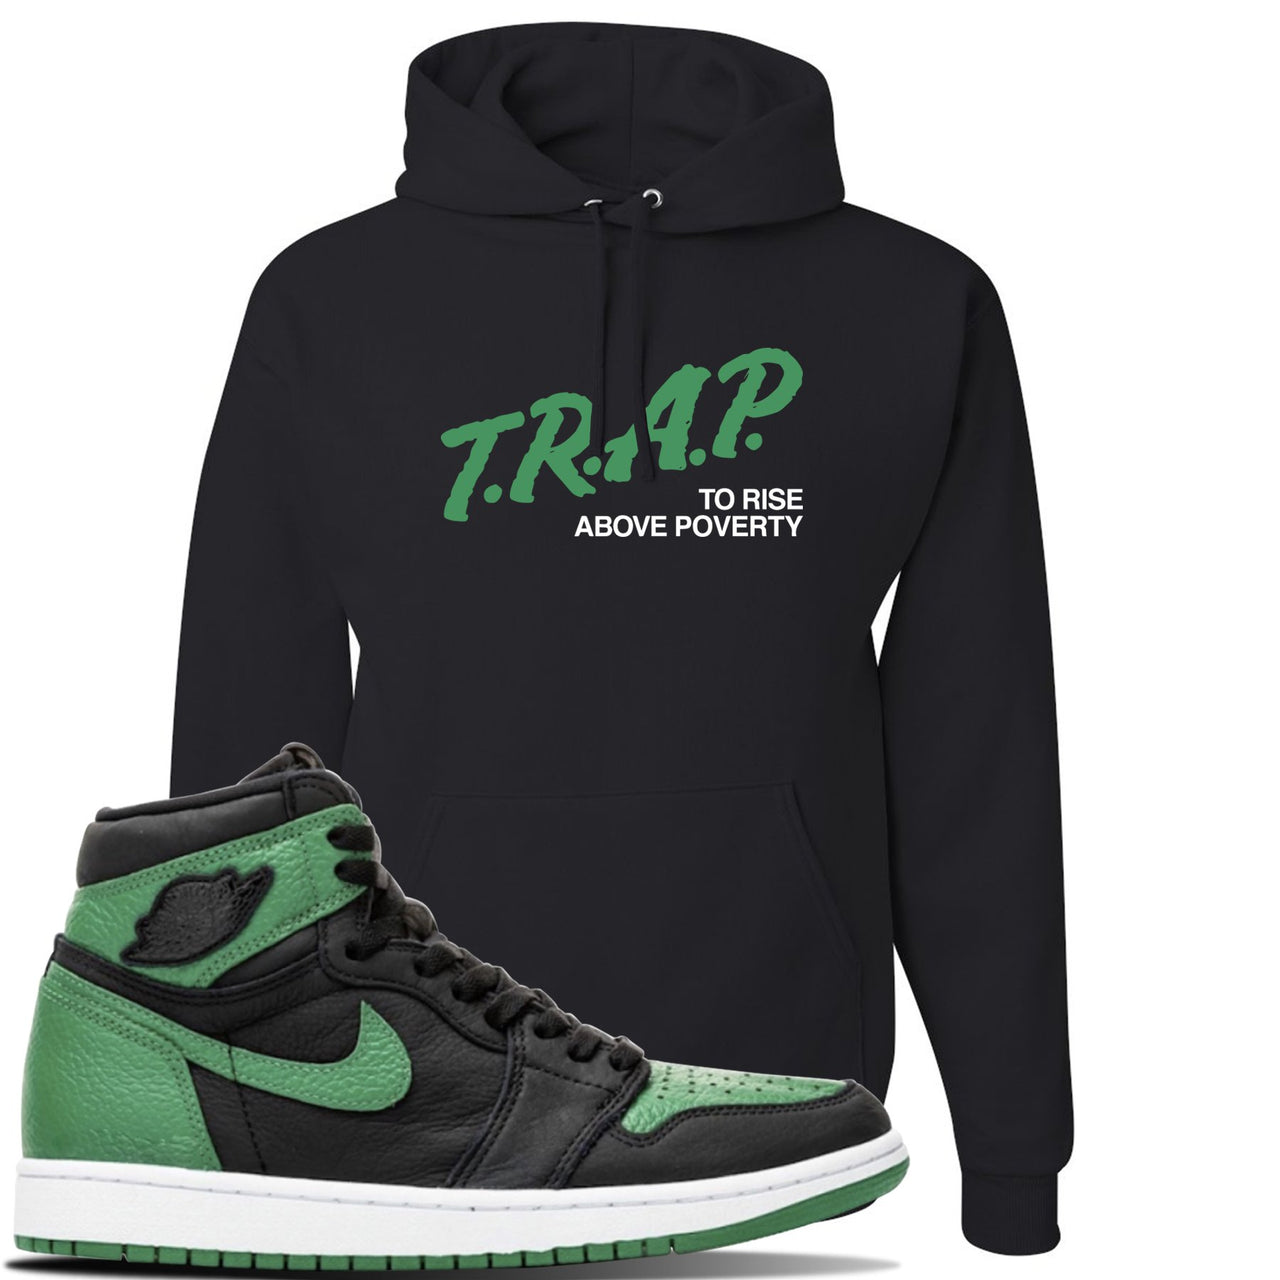 Jordan 1 Retro High OG Pine Green Gym Sneaker Black Pullover Hoodie | Hoodie to match Air Jordan 1 Retro High OG Pine Green Gym Shoes | Trap To Rise Above Poverty